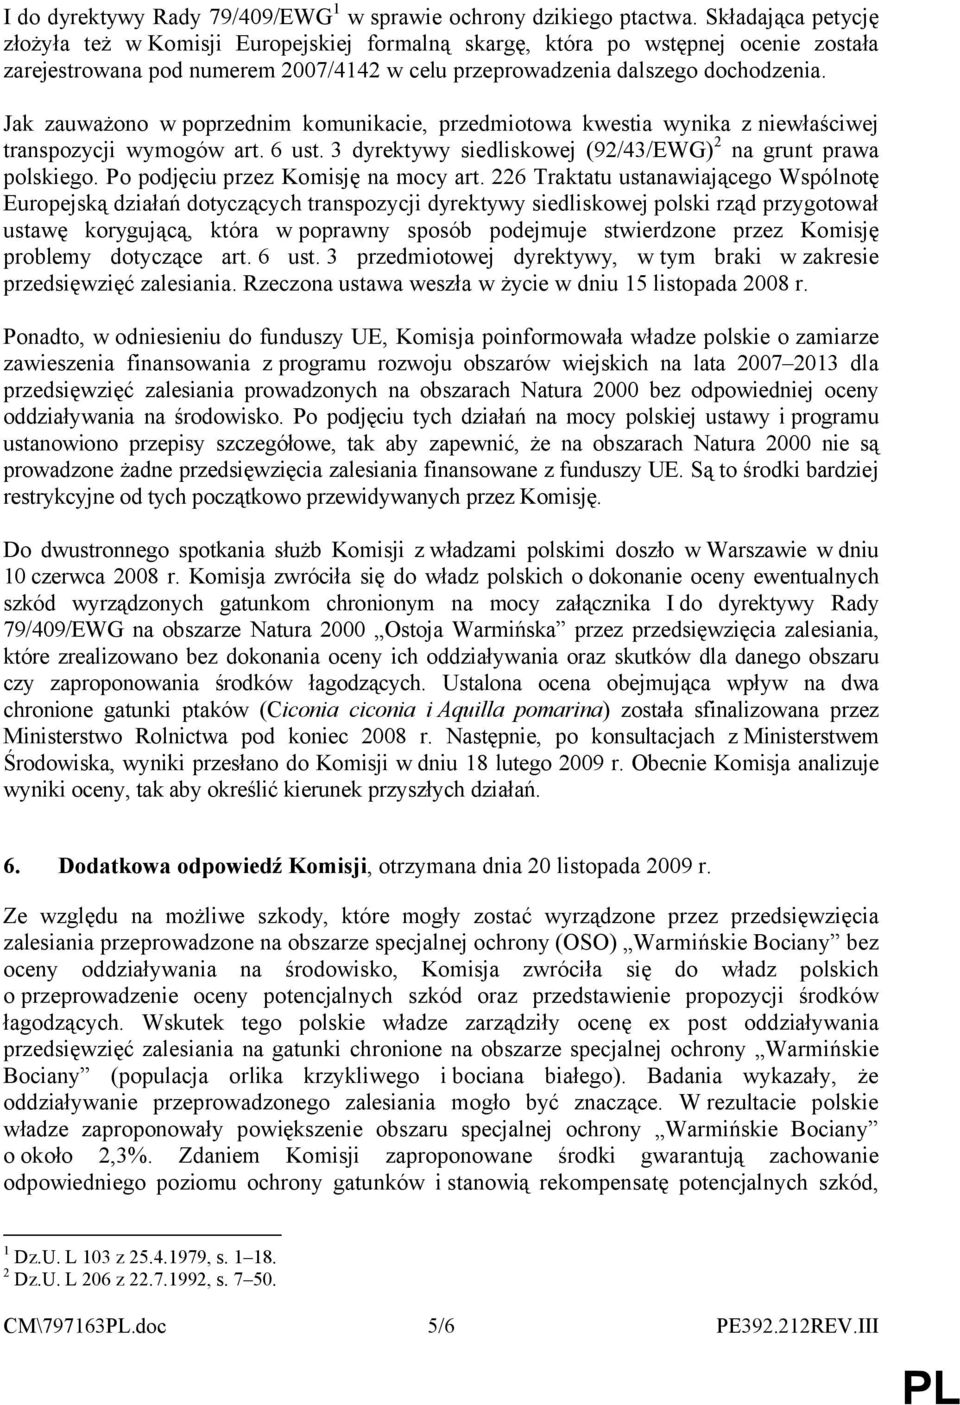 Jak zauważono wpoprzednim komunikacie, przedmiotowa kwestia wynika zniewłaściwej transpozycji wymogów art. 6 ust. 3 dyrektywy siedliskowej (92/43/EWG) 2 na grunt prawa polskiego.